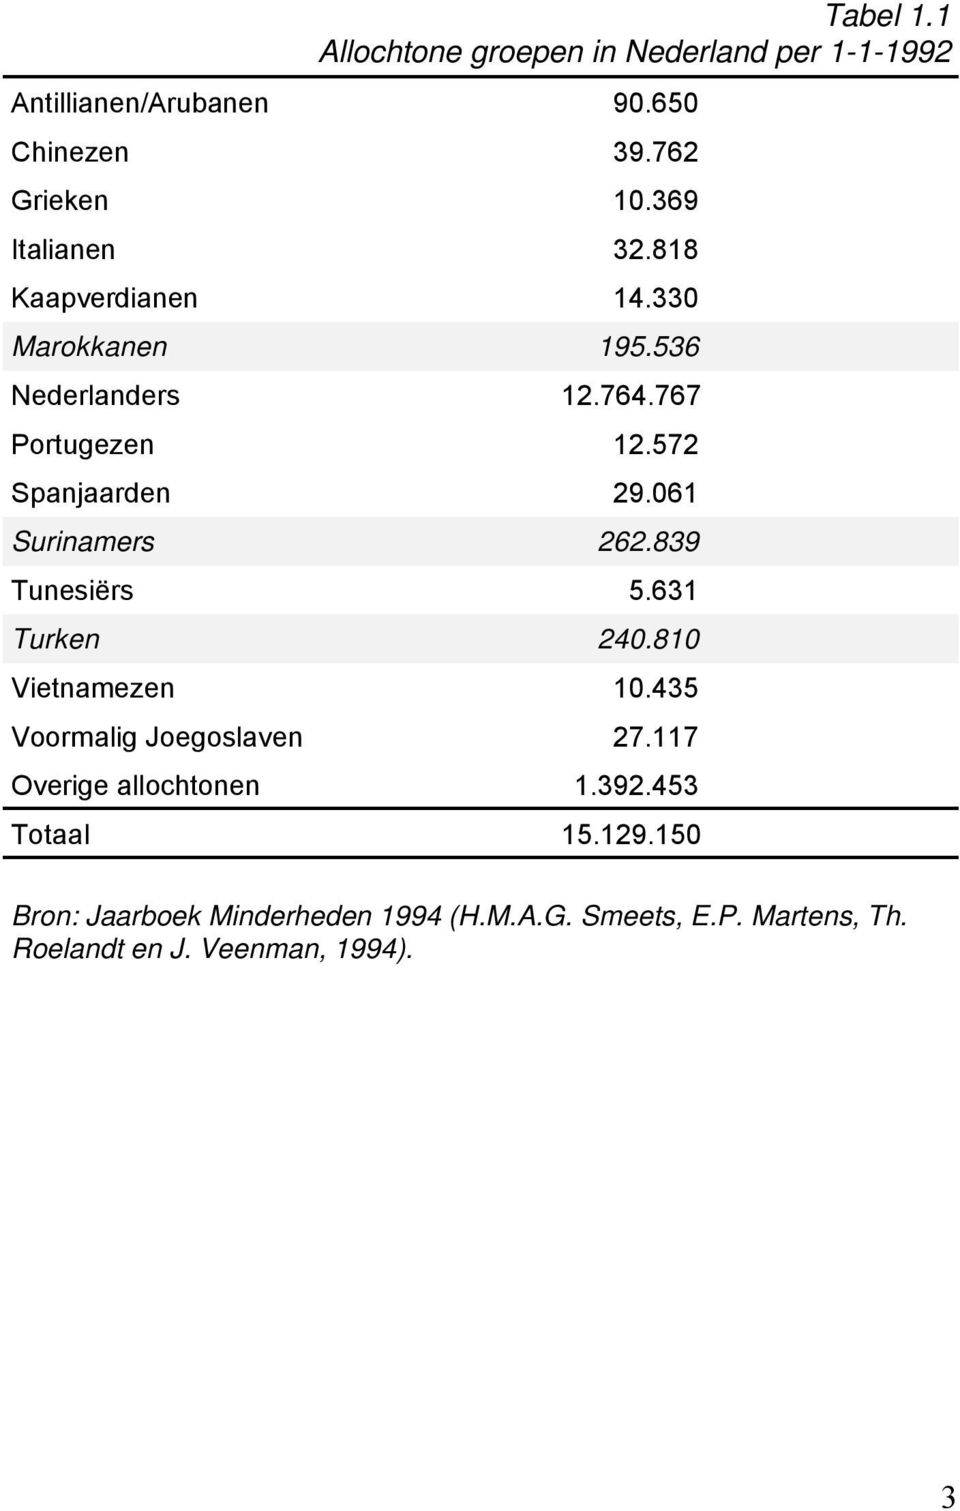 061 Surinamers 262.839 Tunesiërs 5.631 Turken 240.810 Vietnamezen 10.435 Voormalig Joegoslaven 27.